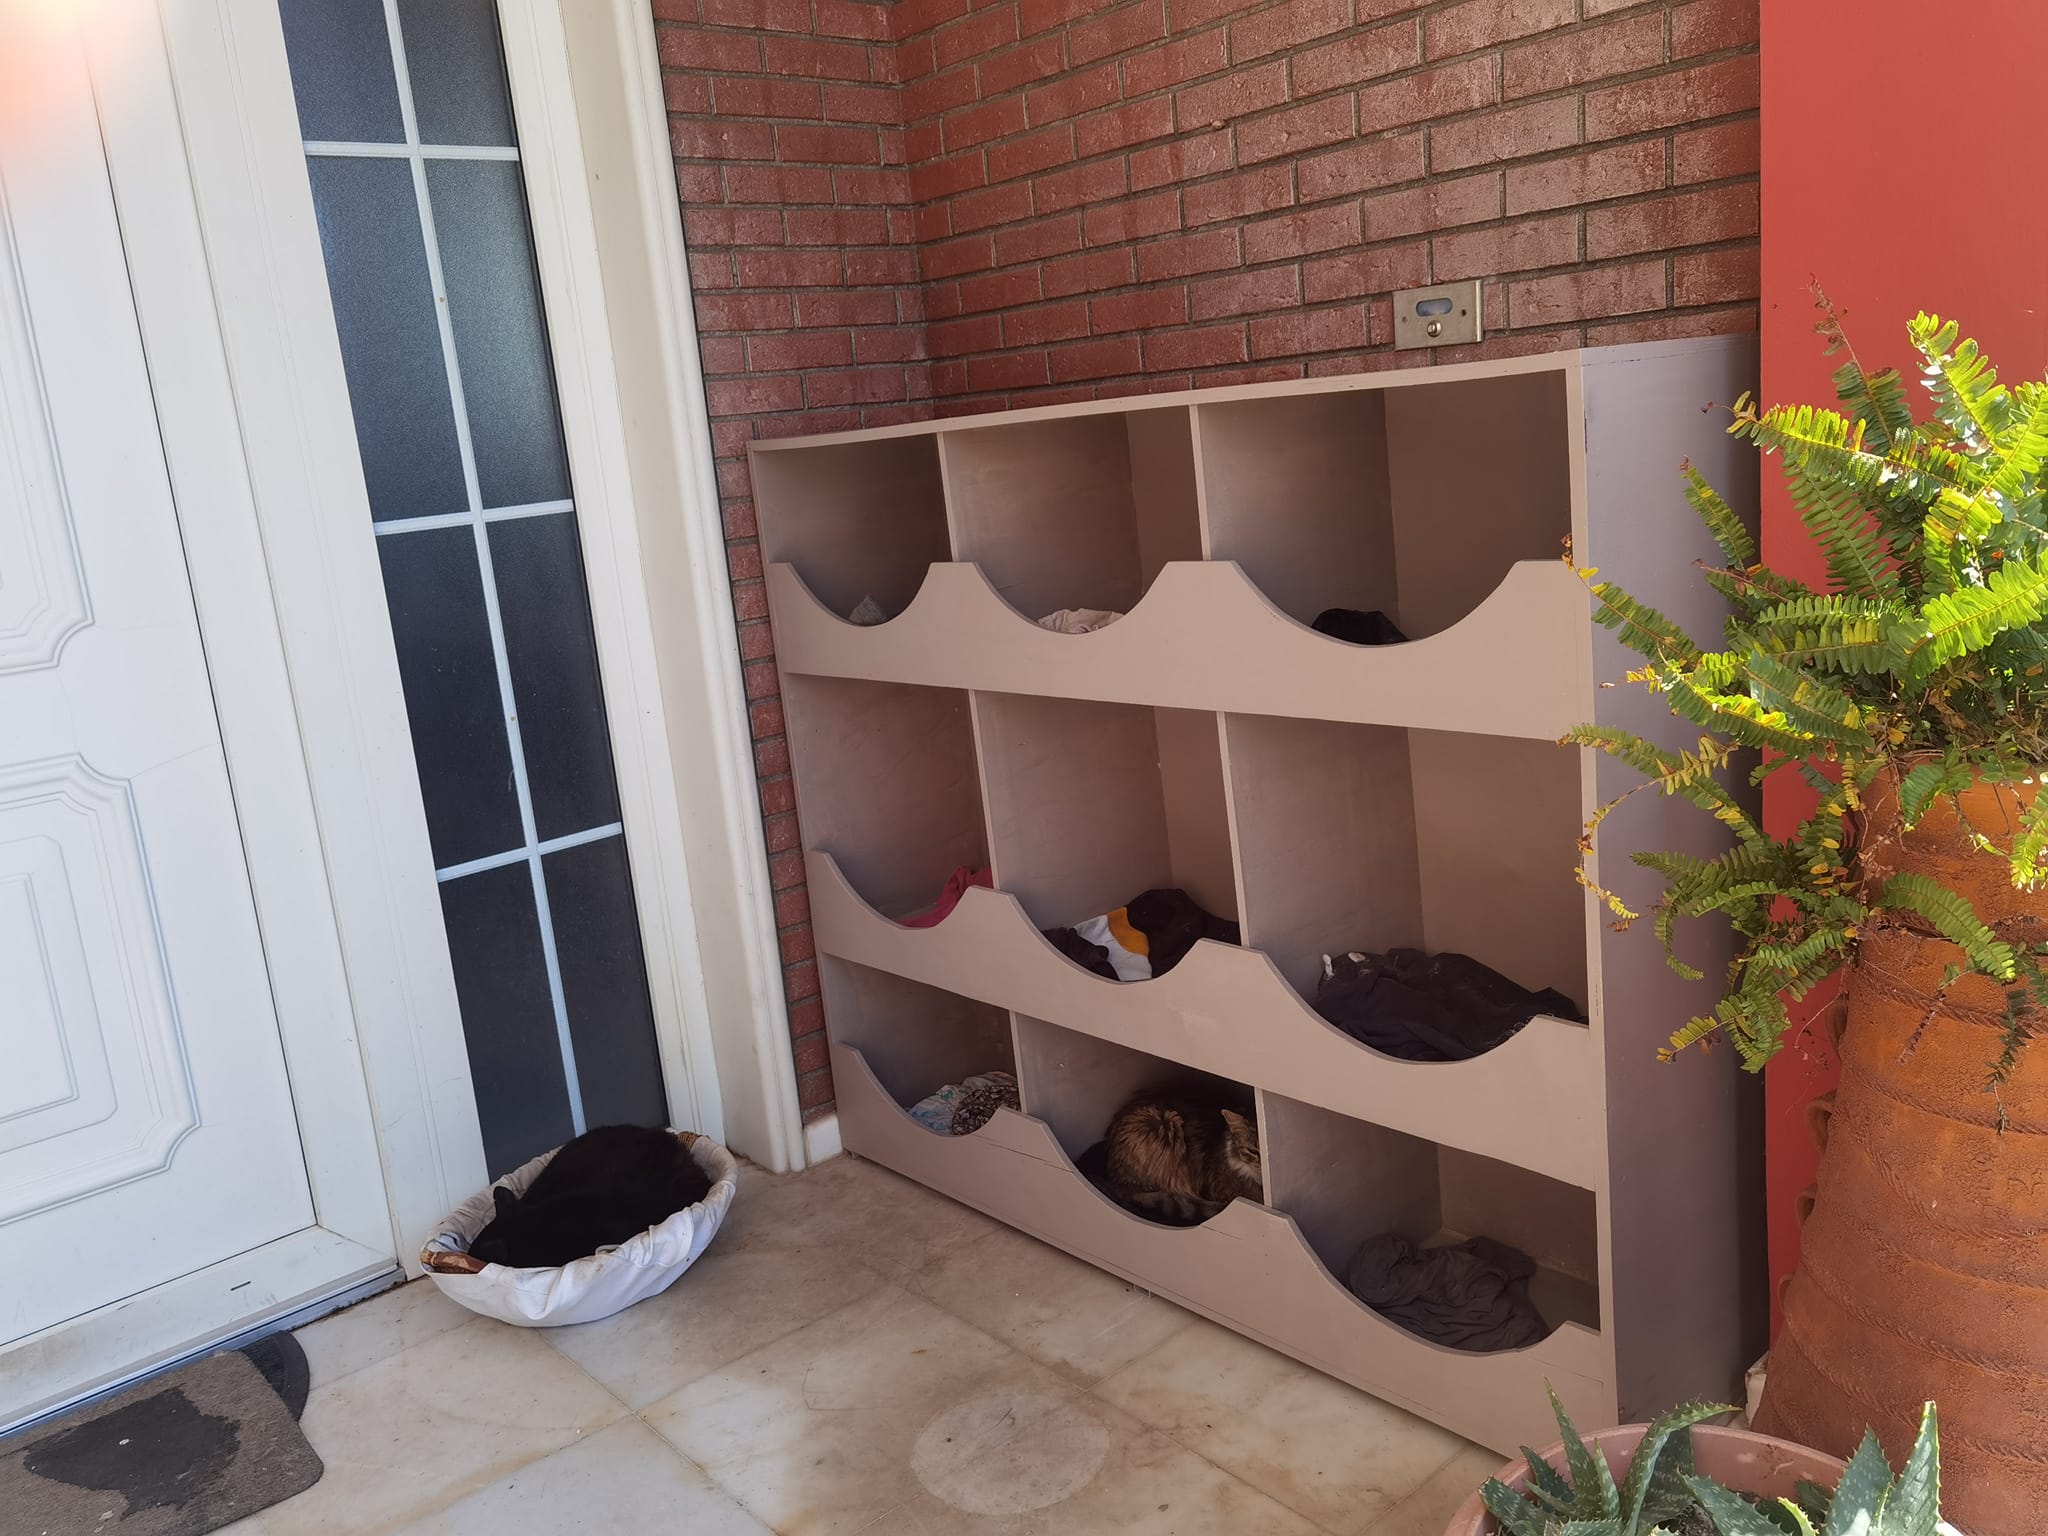 Λέσβος: Δήμαρχος κατασκεύασε ειδικό χώρο για να κοιμούνται οι γάτες της αυλής του